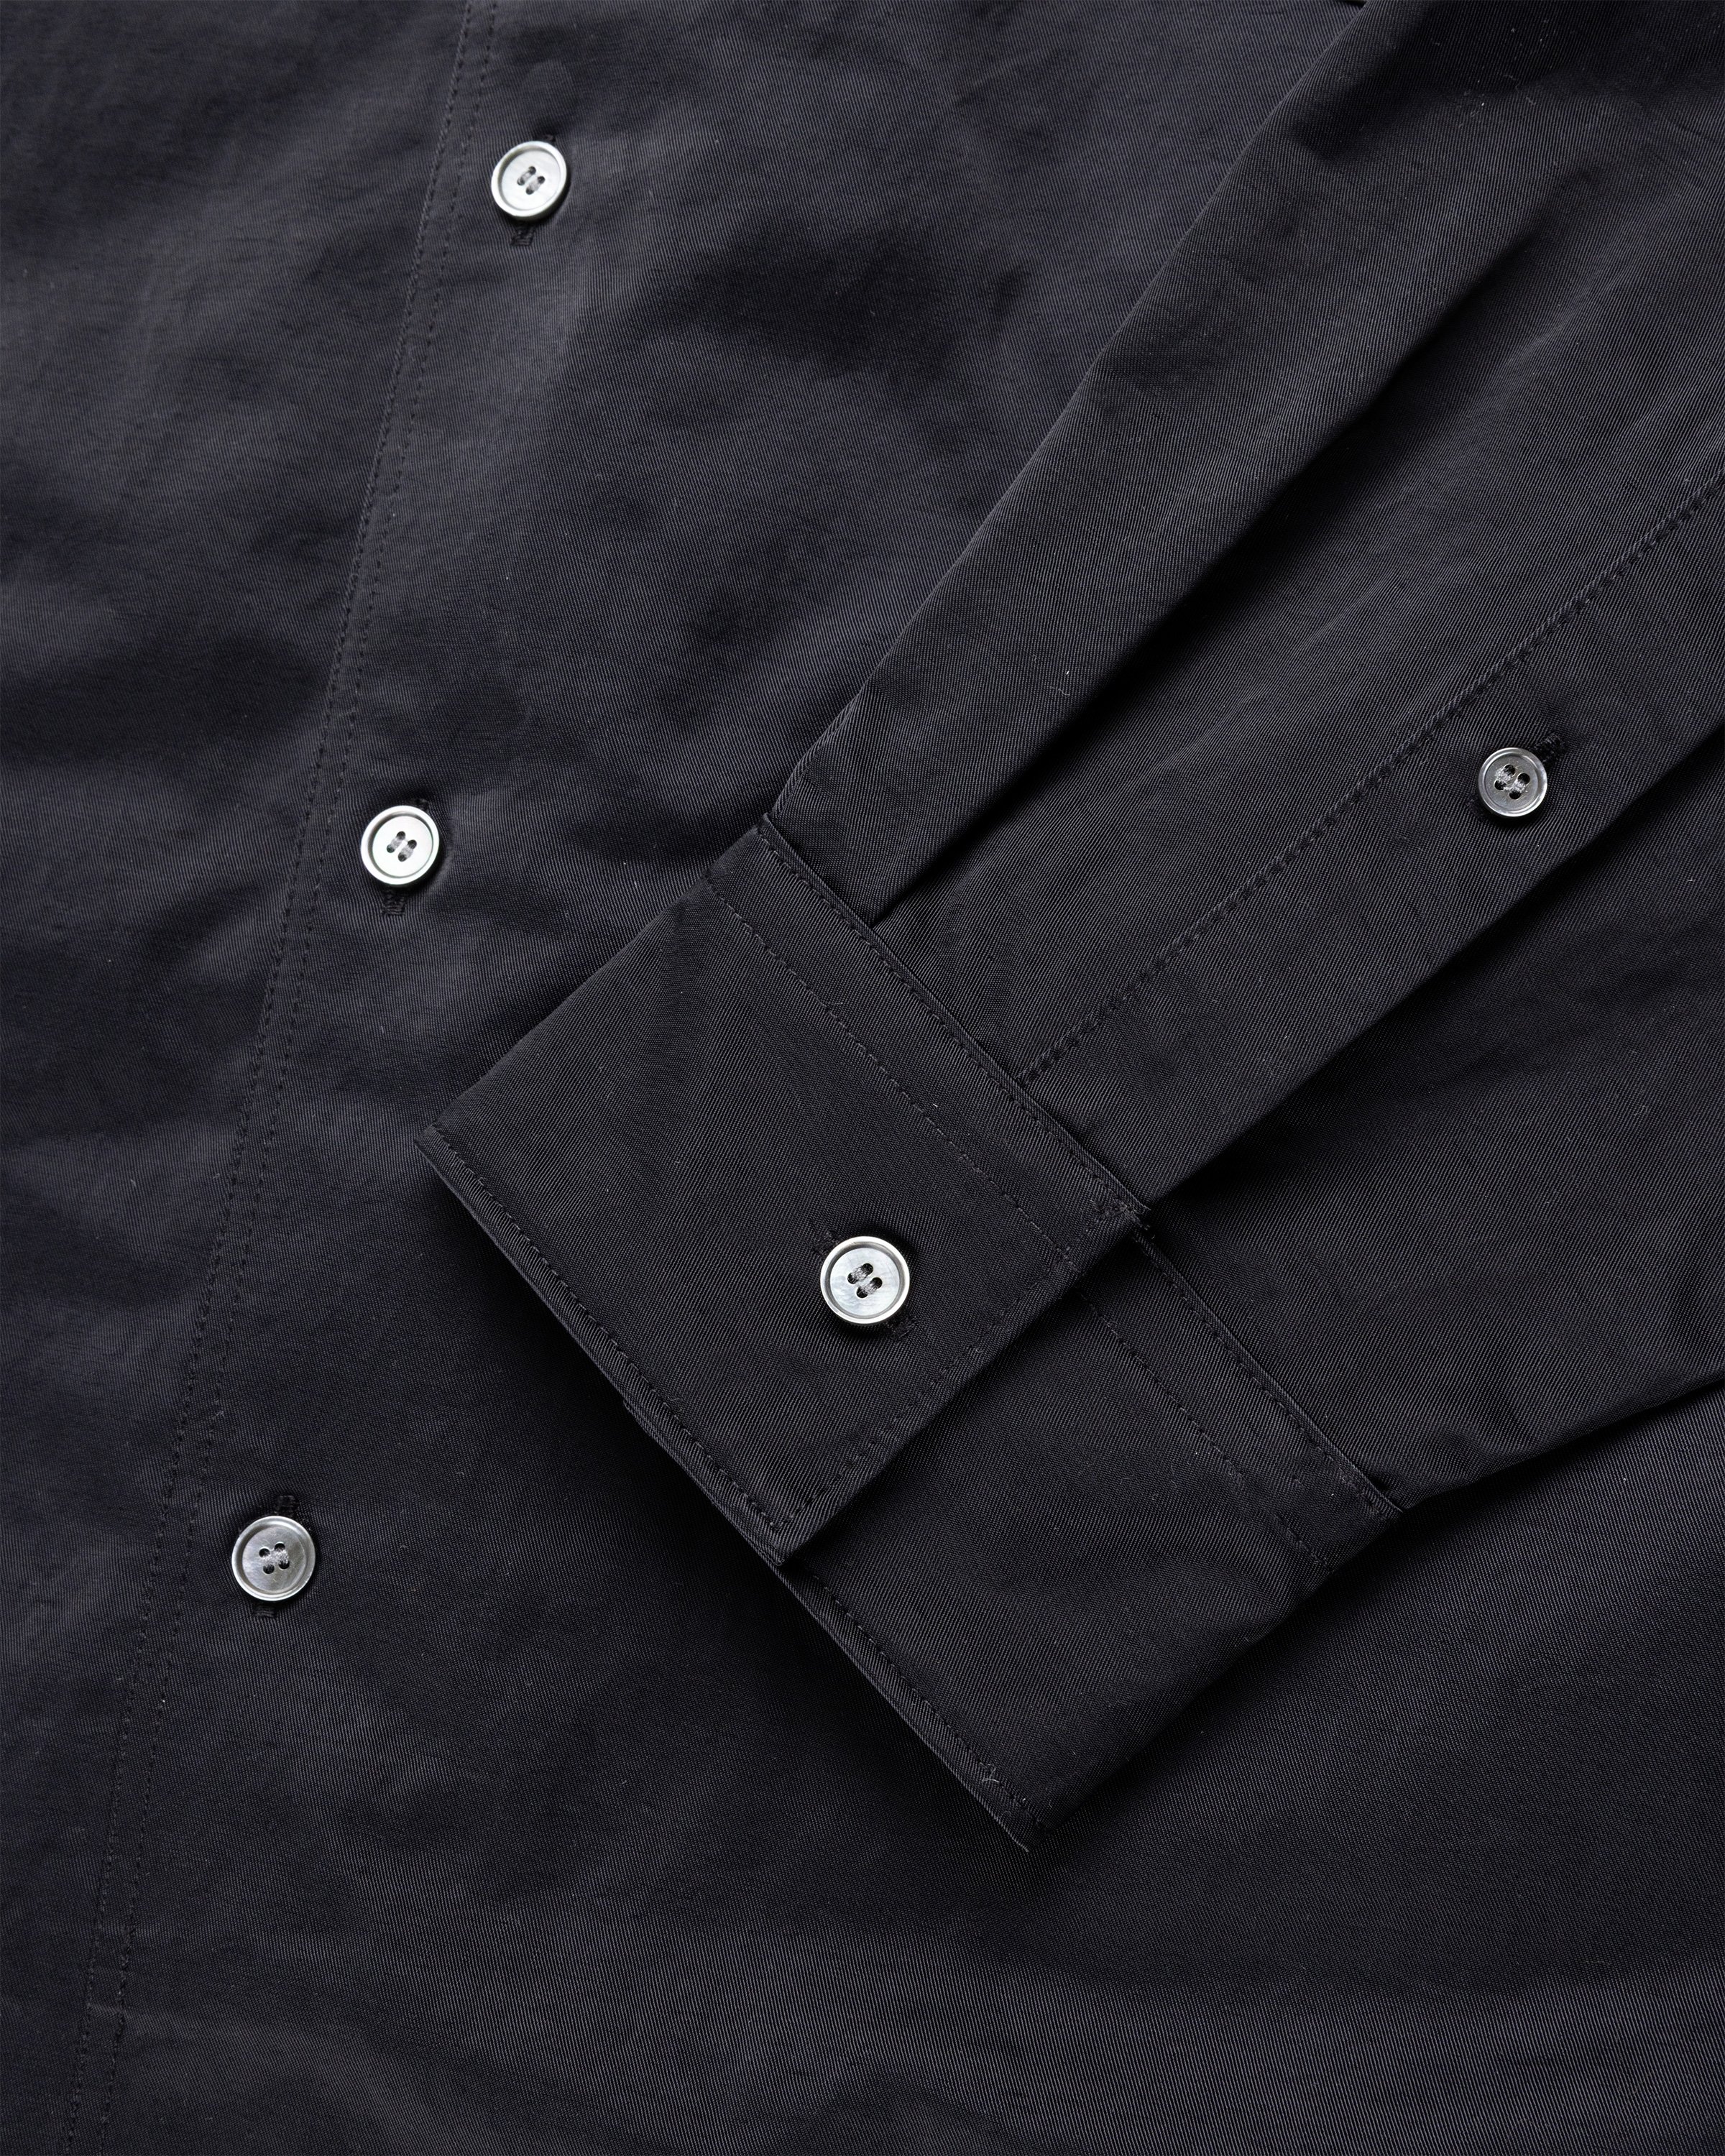 Acne Studios - Nylon Overshirt Black - Clothing - Black - Image 6